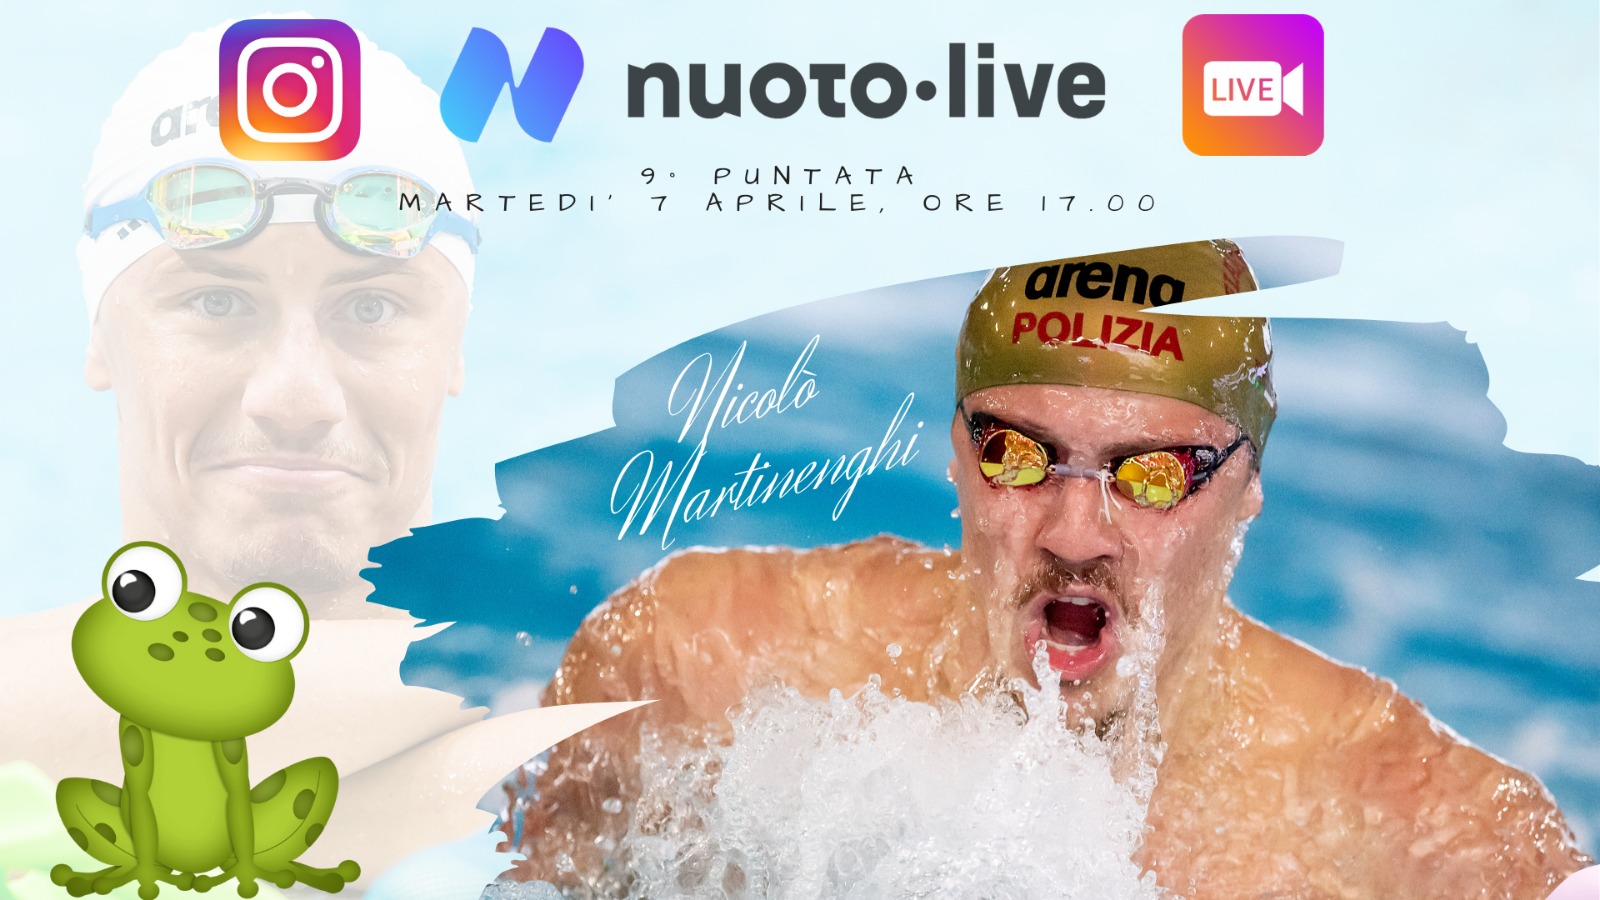 Nicolò Martinenghi live su Instagram per Nuotopuntolive